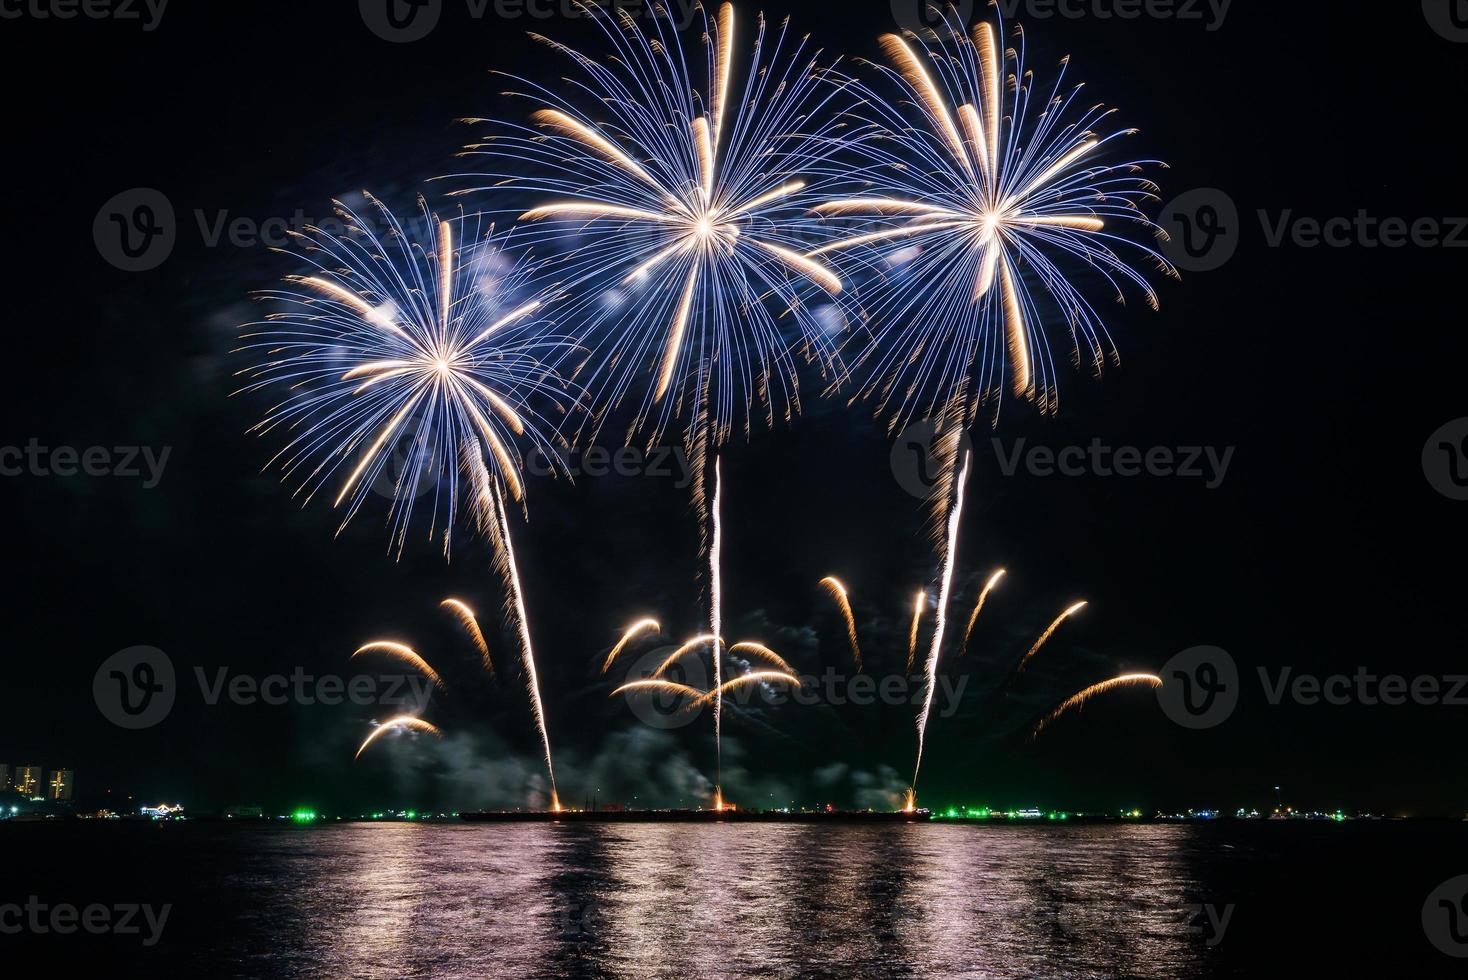 erstaunliches schönes buntes Feuerwerk in der Feiernacht, das am Meeresstrand mit mehrfarbiger Reflexion auf dem Wasser gezeigt wird foto